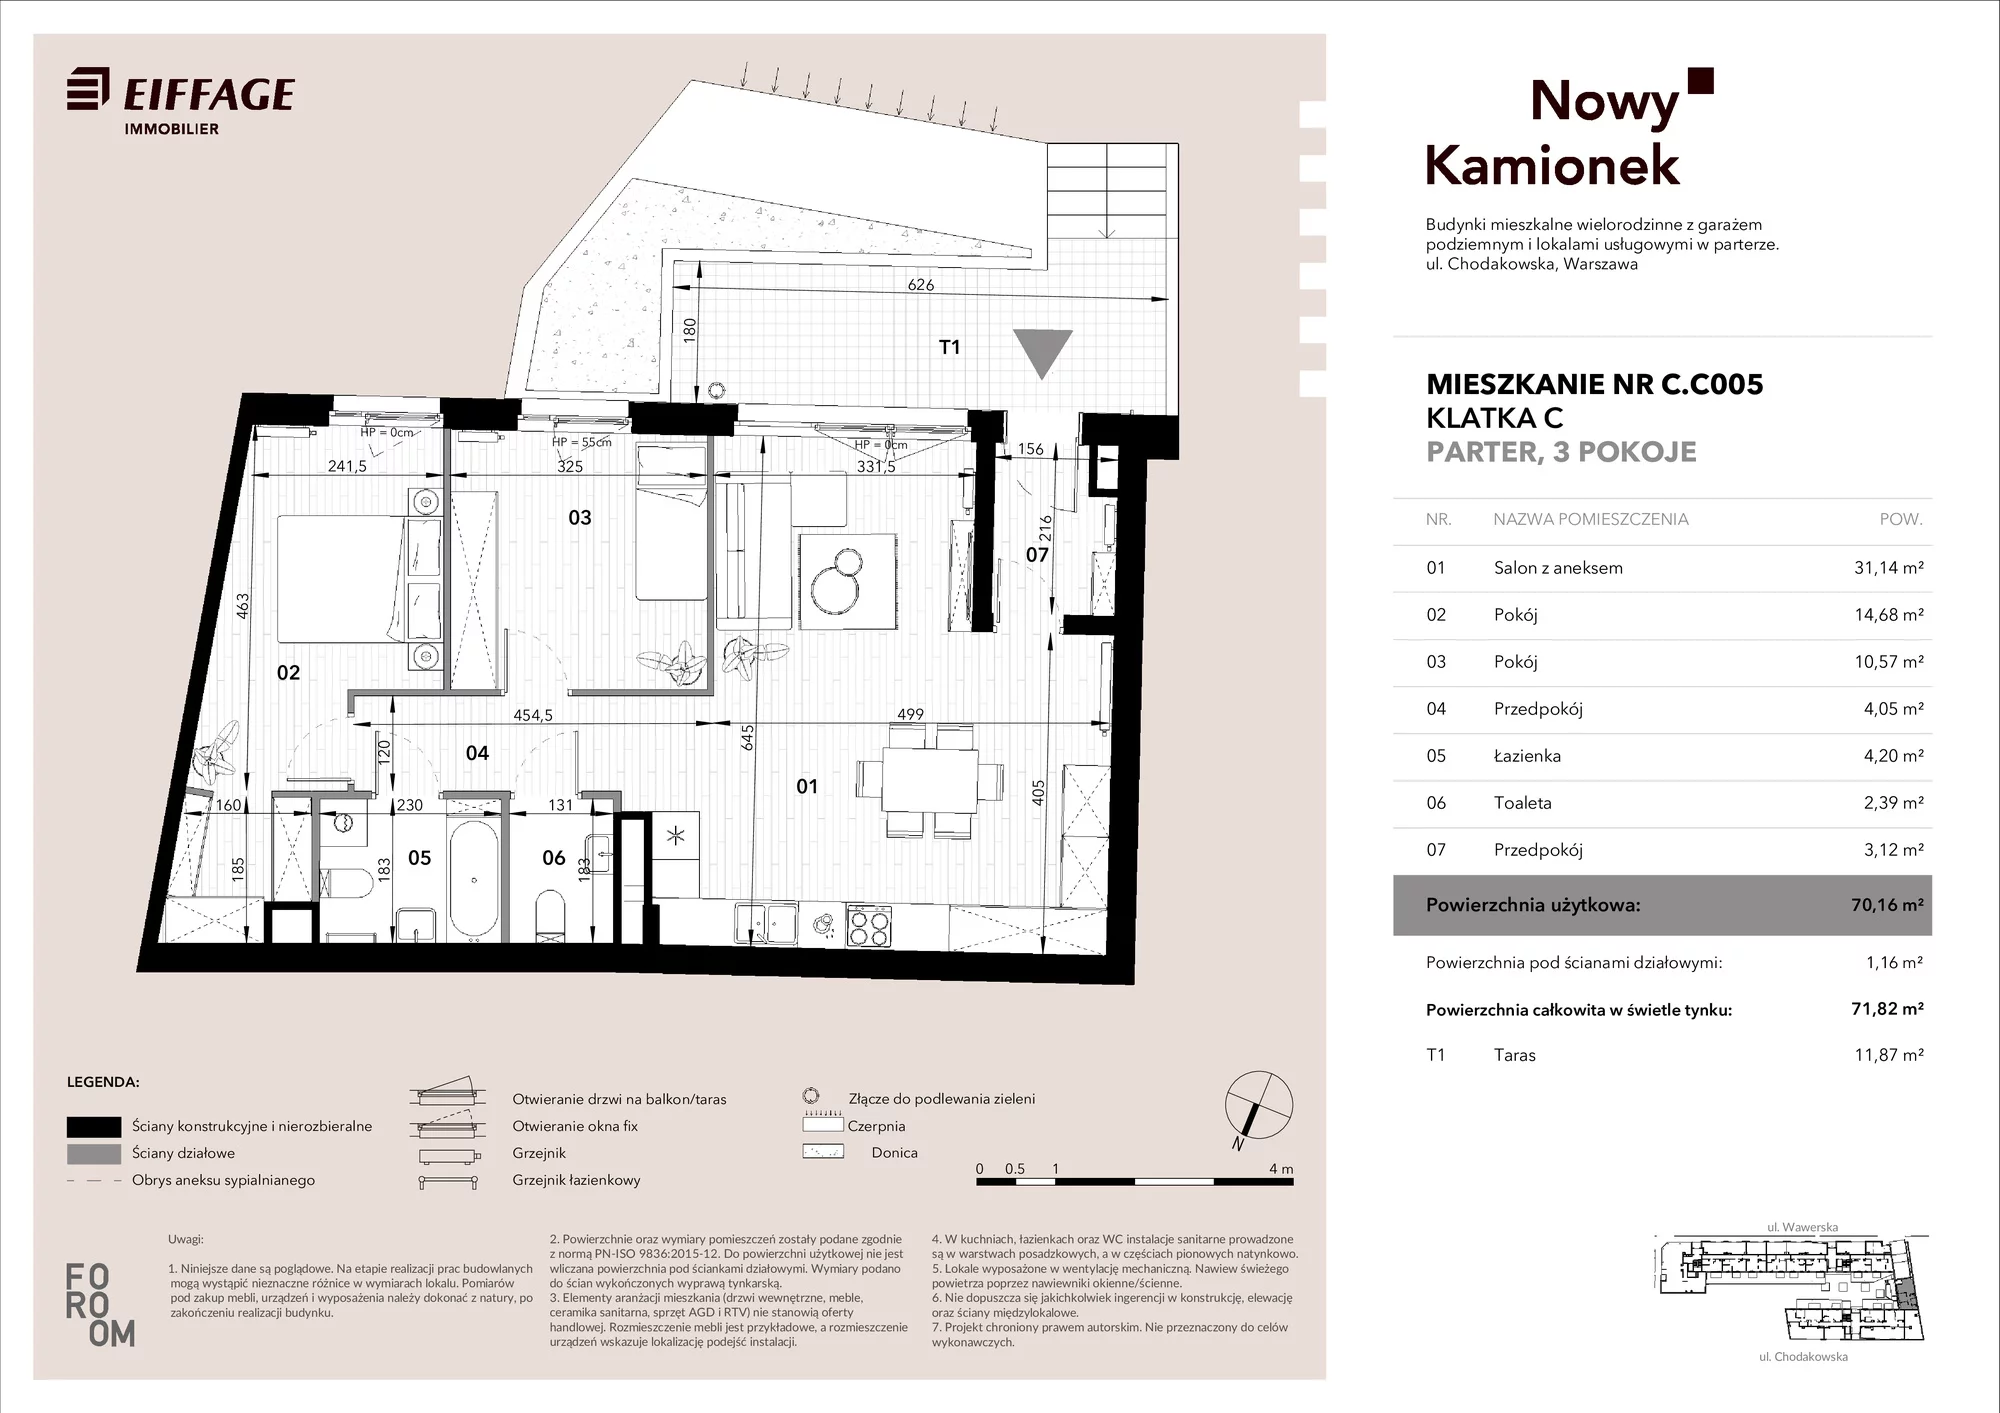 Mieszkanie 70,16 m², parter, oferta nr C.C005, Nowy Kamionek, Warszawa, Praga Południe, Kamionek, ul. Chodakowska